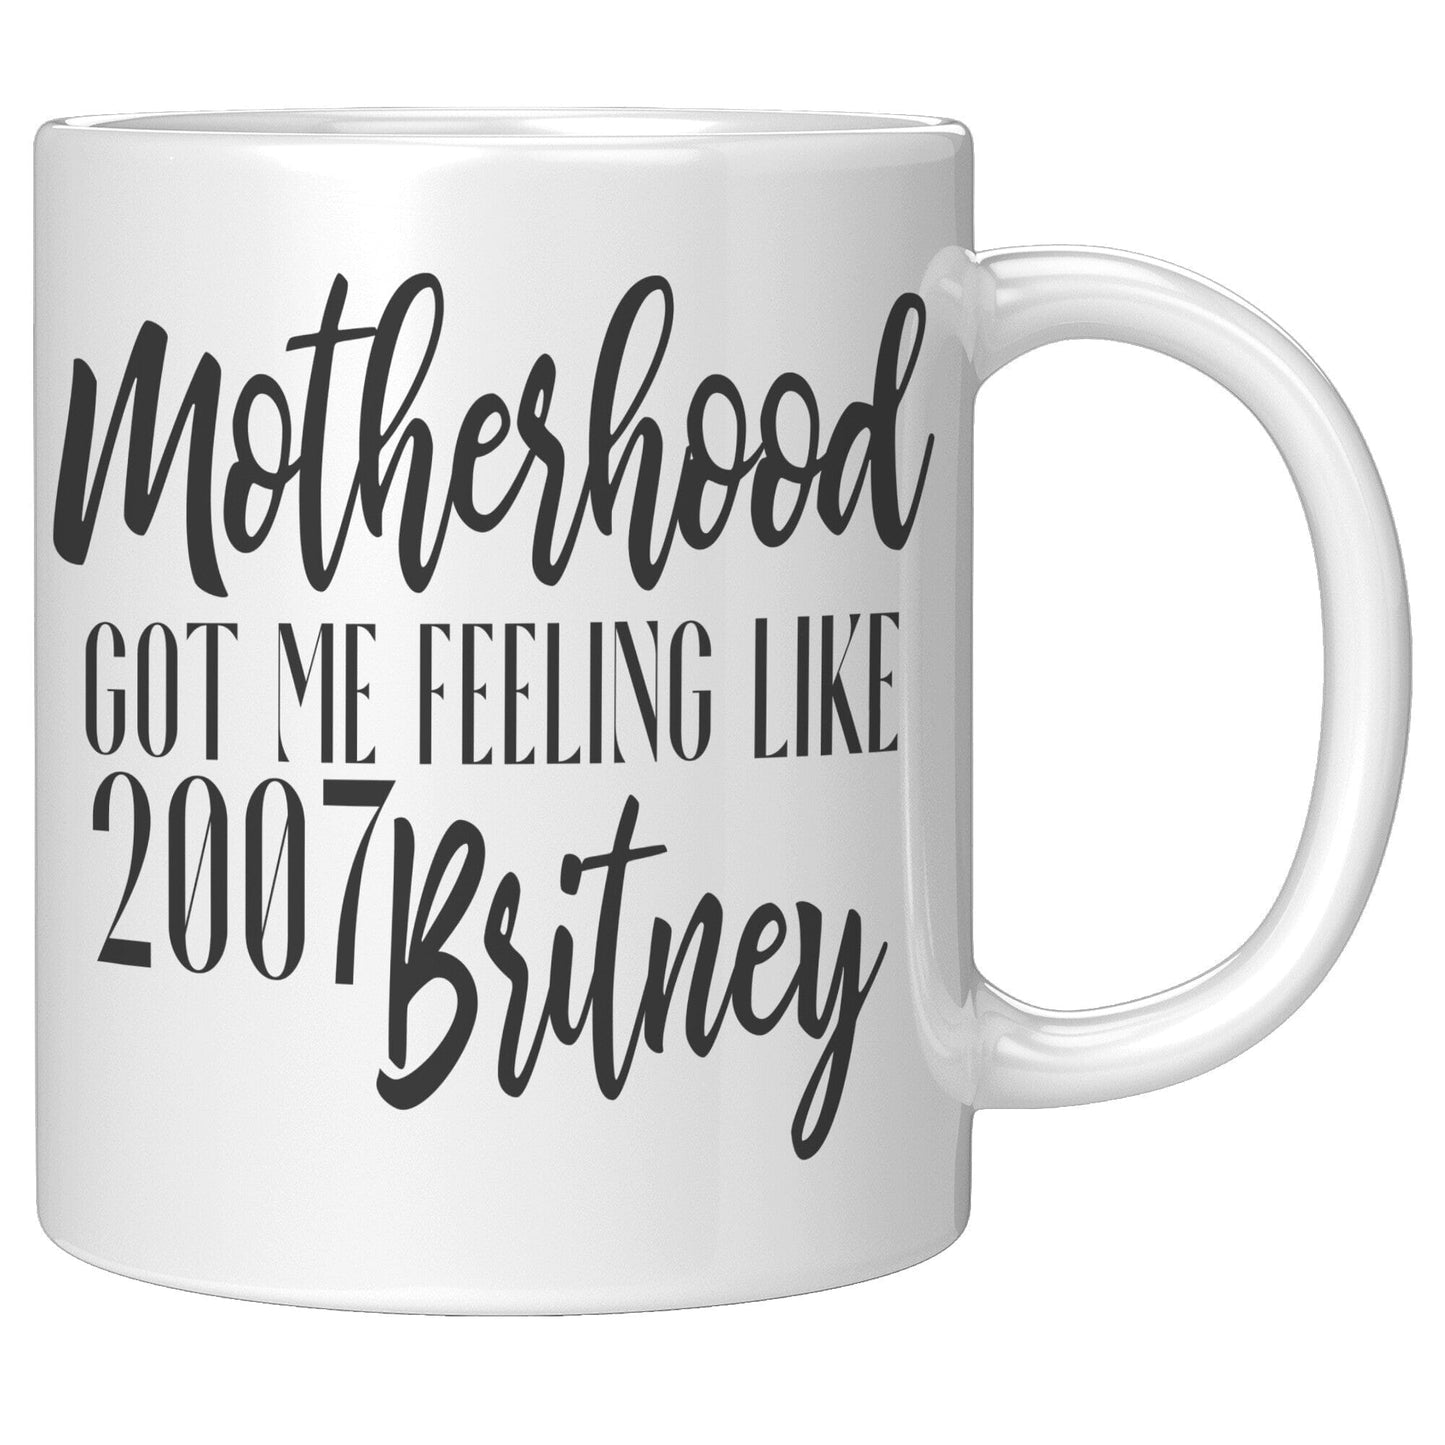 2007 Britney